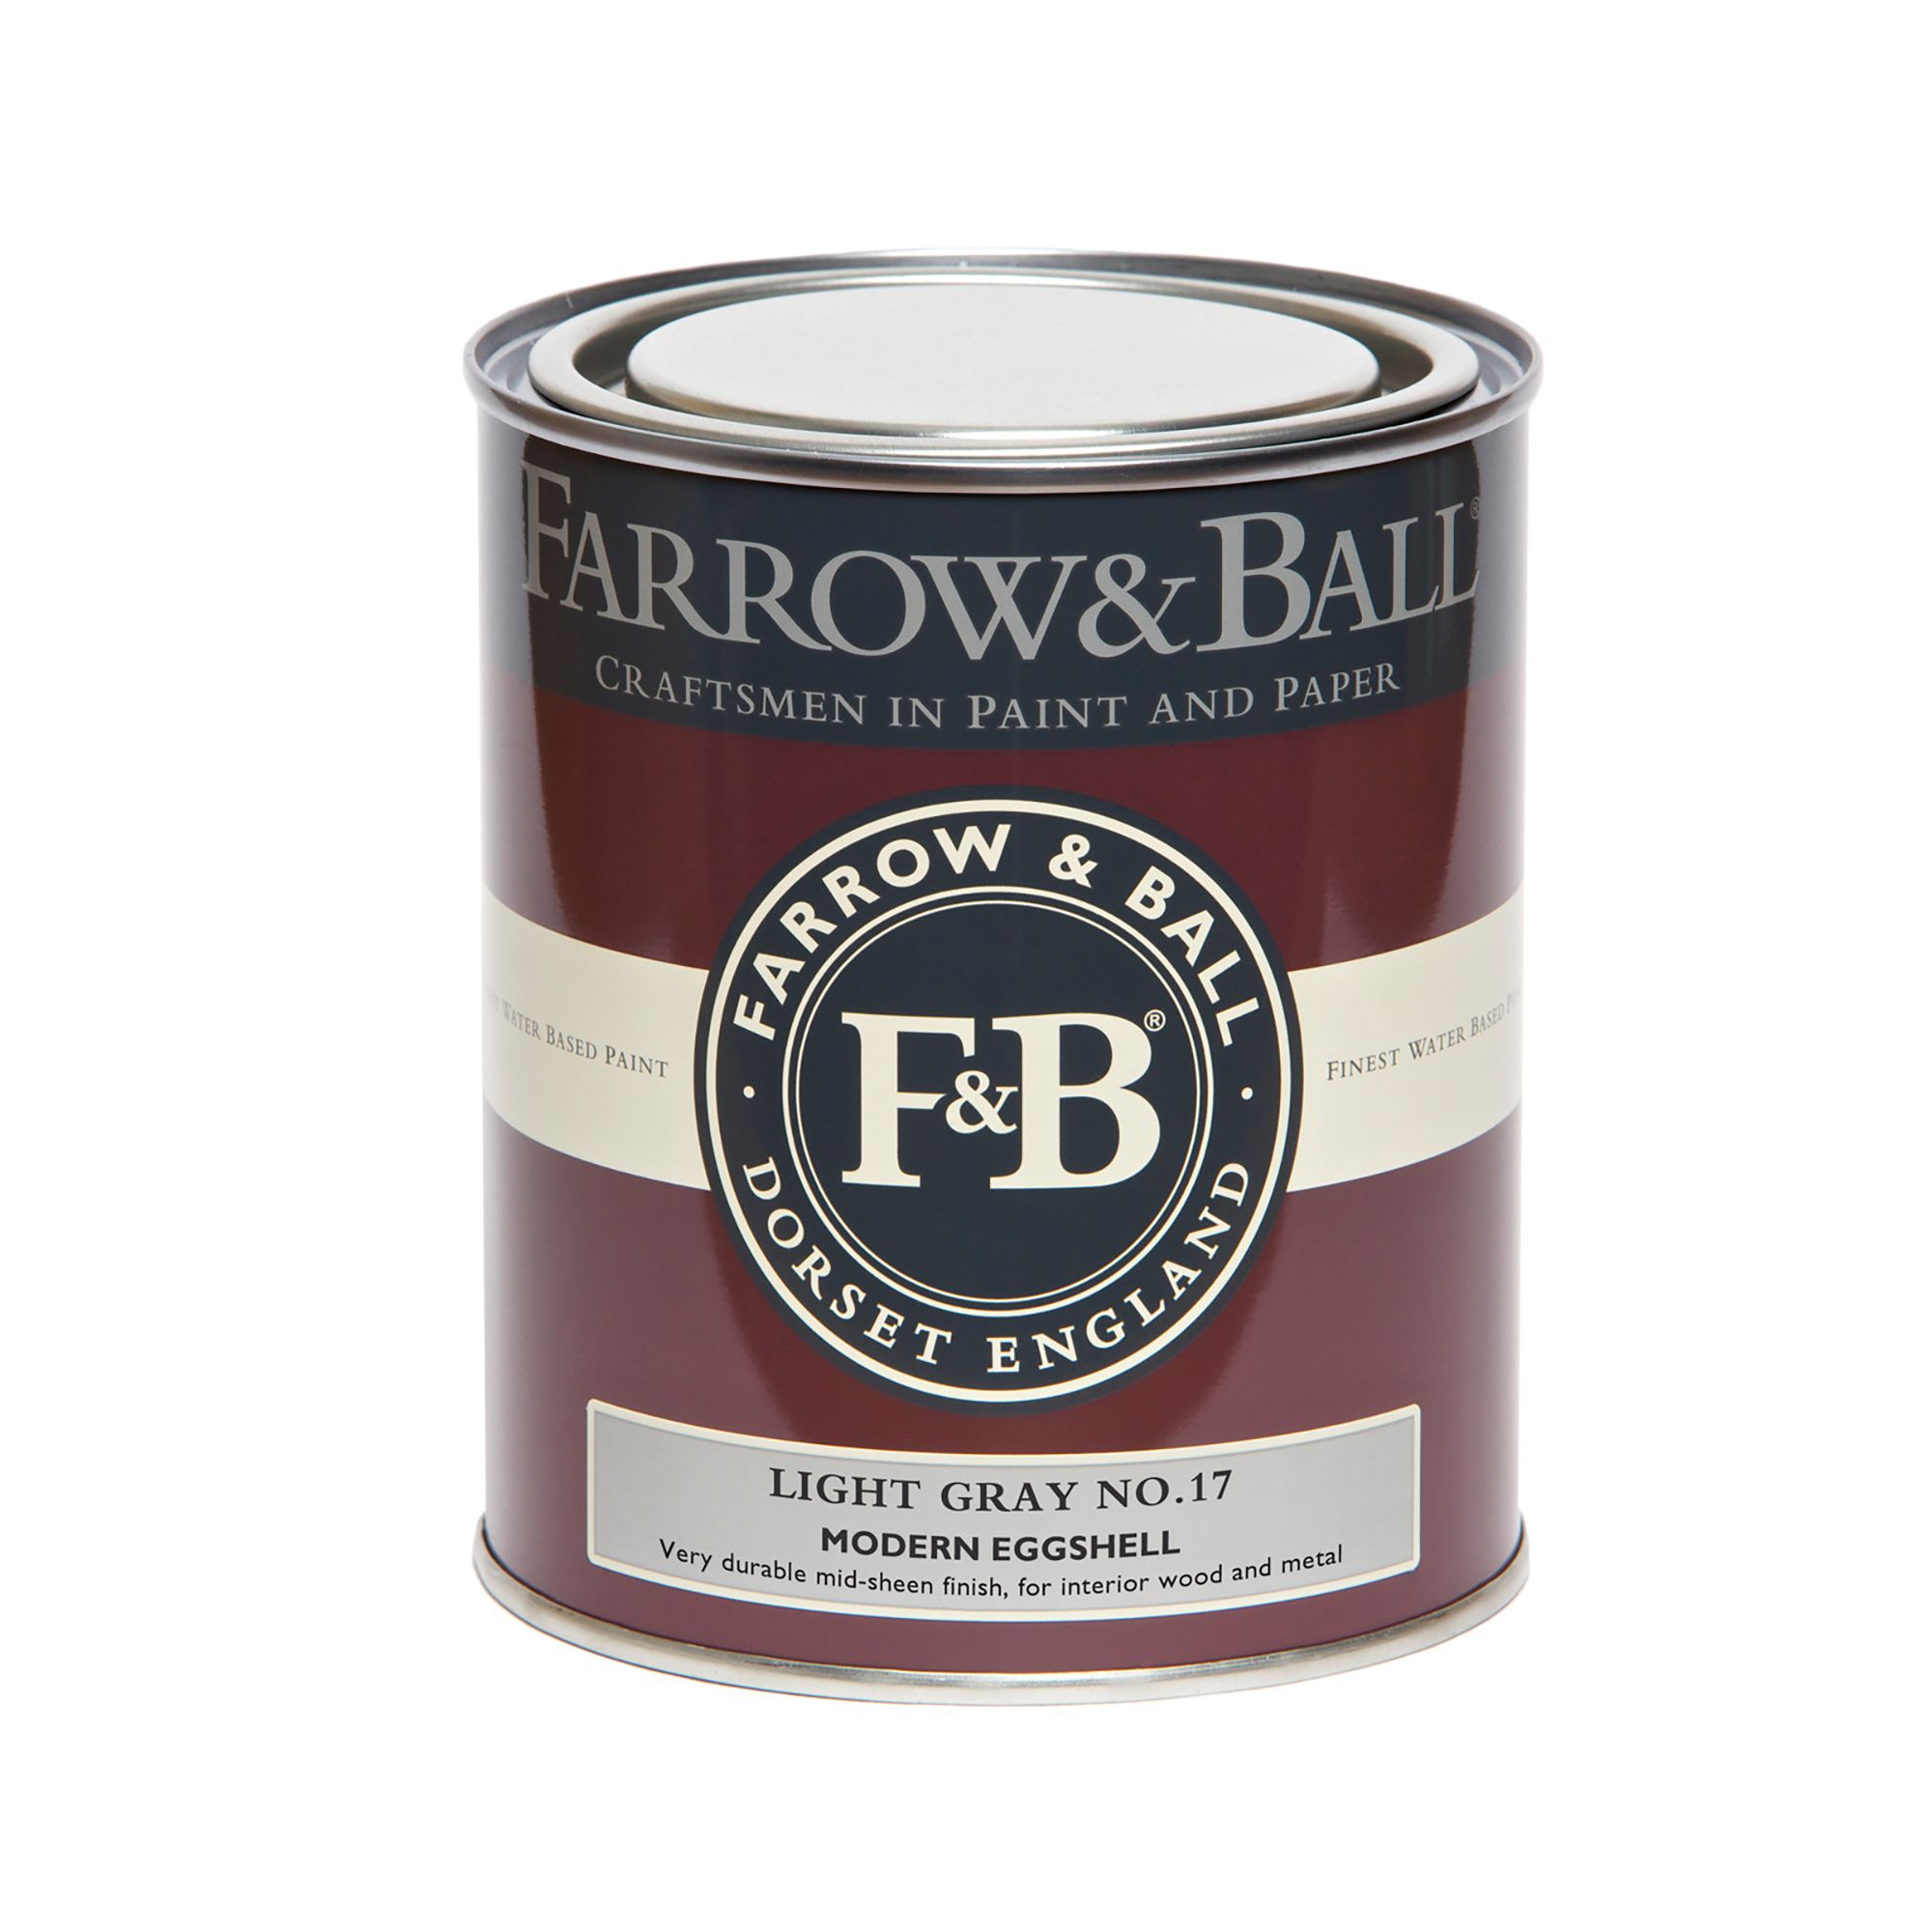 Farrow & Ball Modern Light Gray No.17 Eggshell Paint, 750ml